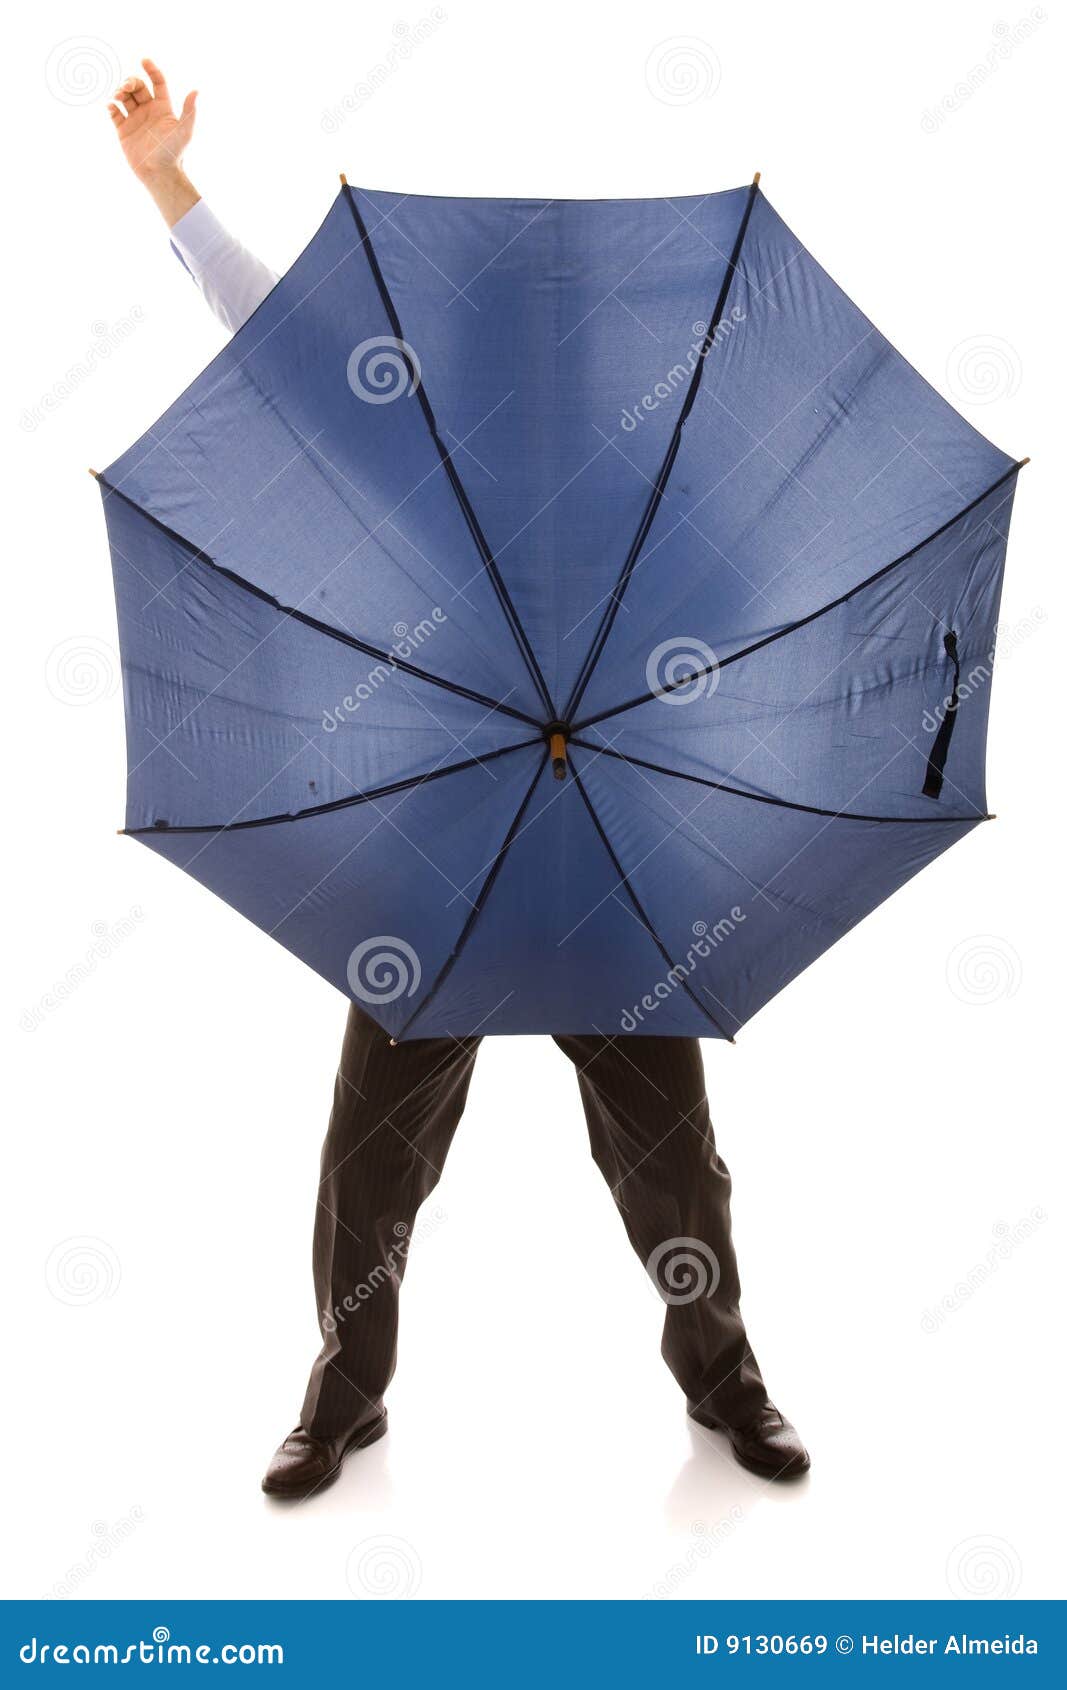 Bewind κρύβοντας ομπρέλα. πίσω από τον μπλε επιχειρηματία που κρύβει το απομονωμένο λευκό ομπρελών